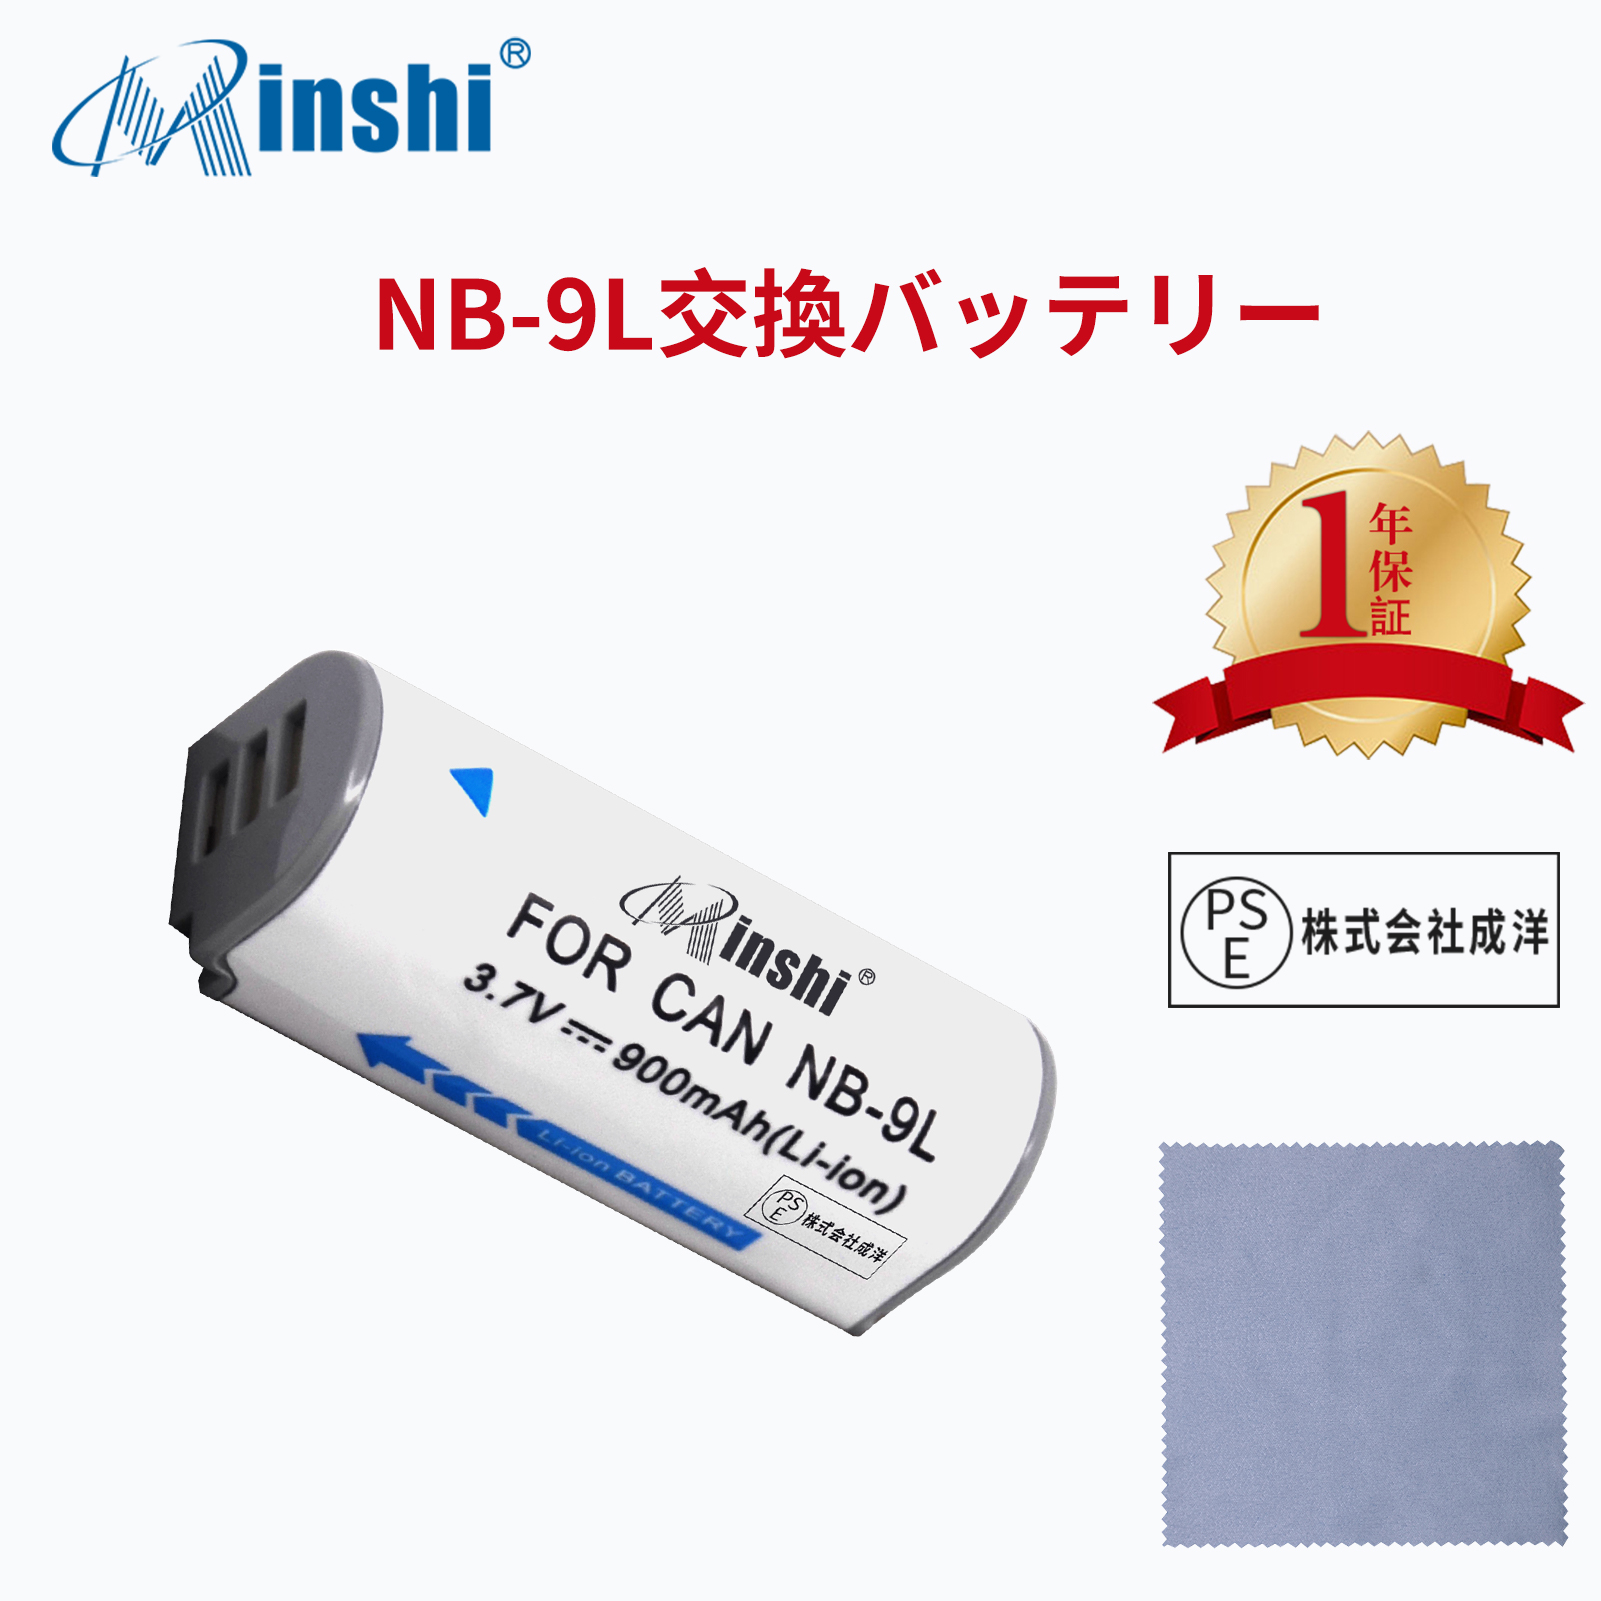 【クロス付き】minshi Panasonic Canon IXY 1 NB-9L 【900mAh 3.7V】PSE認定済 高品質交換用バッテリー